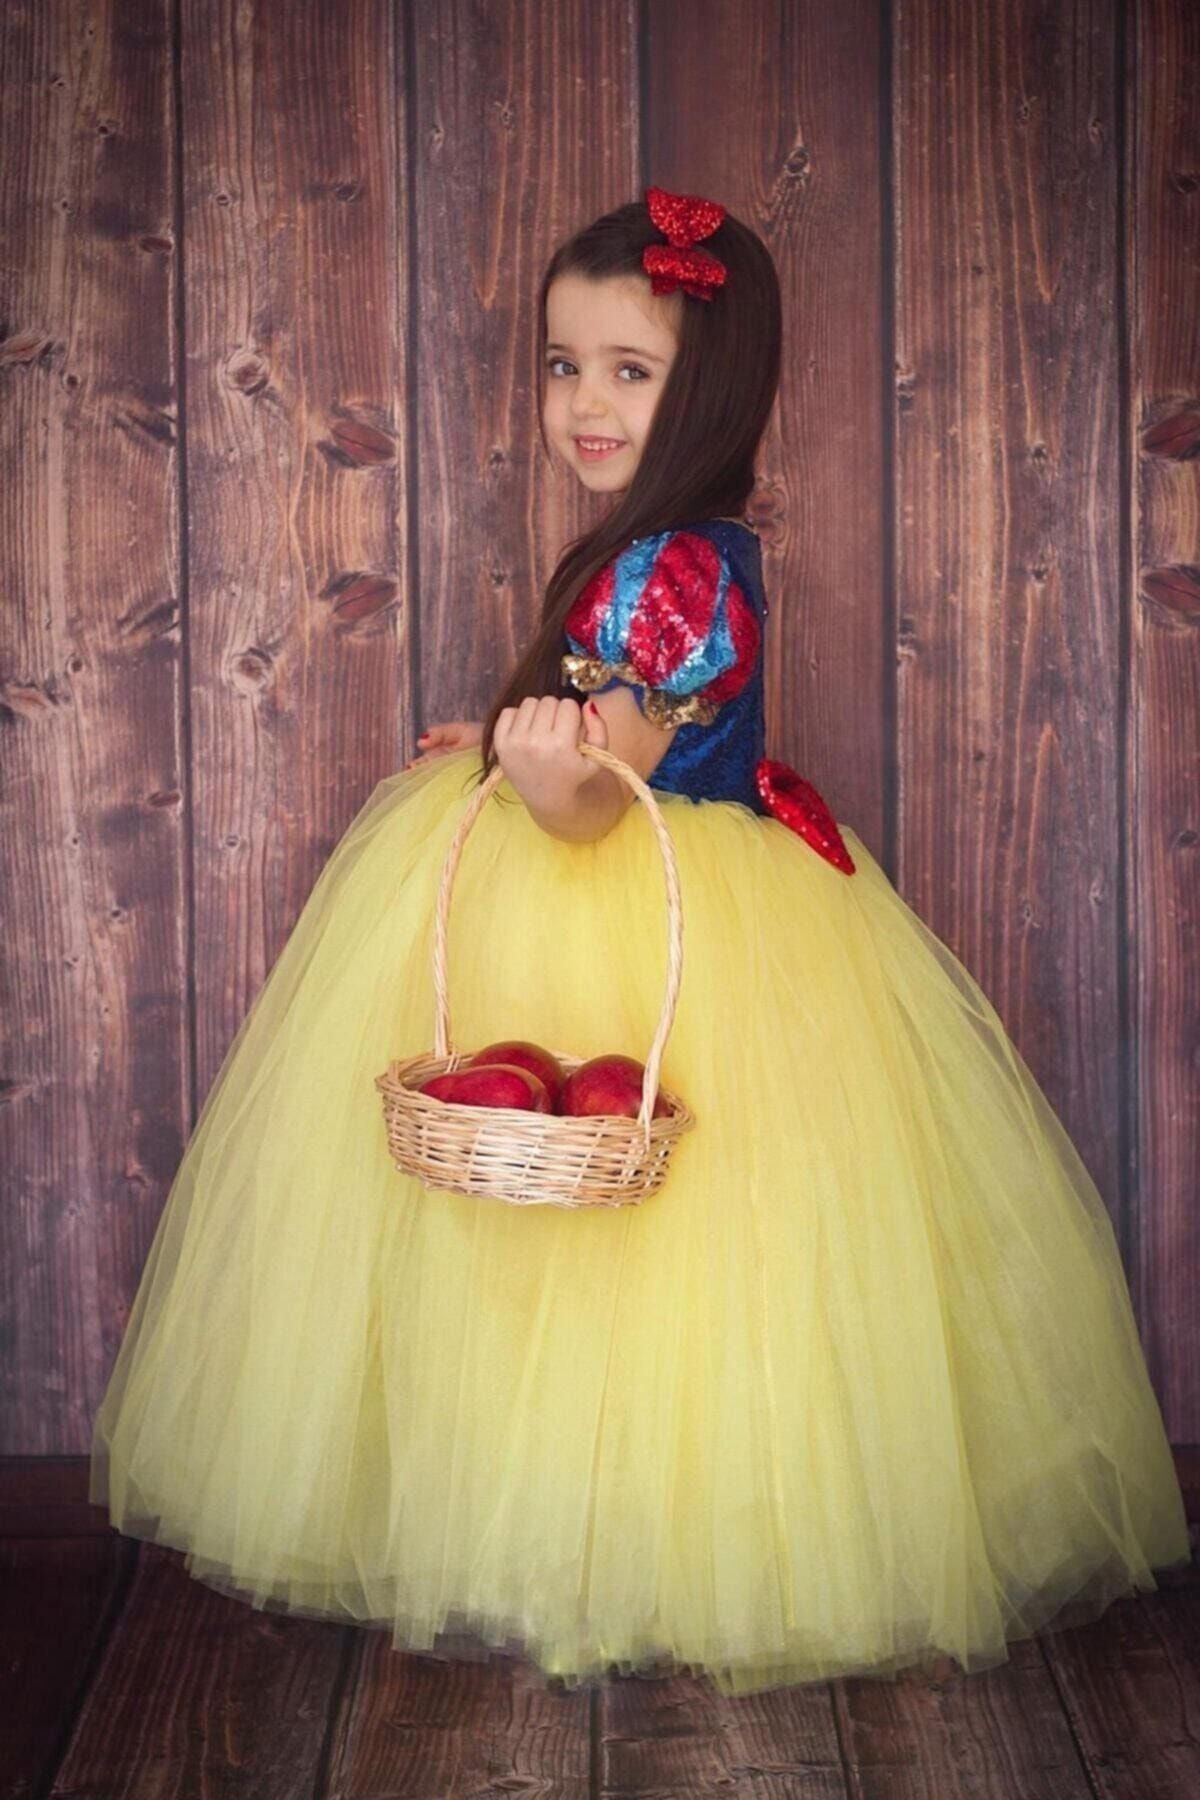 Costume de princesse Blanche-Neige pour fille d'Halloween | Vêtements d’anniversaire pour enfants, Costume d’Halloween Blanche-Neige, Costume de princesse, Costume d’Halloween pour enfants